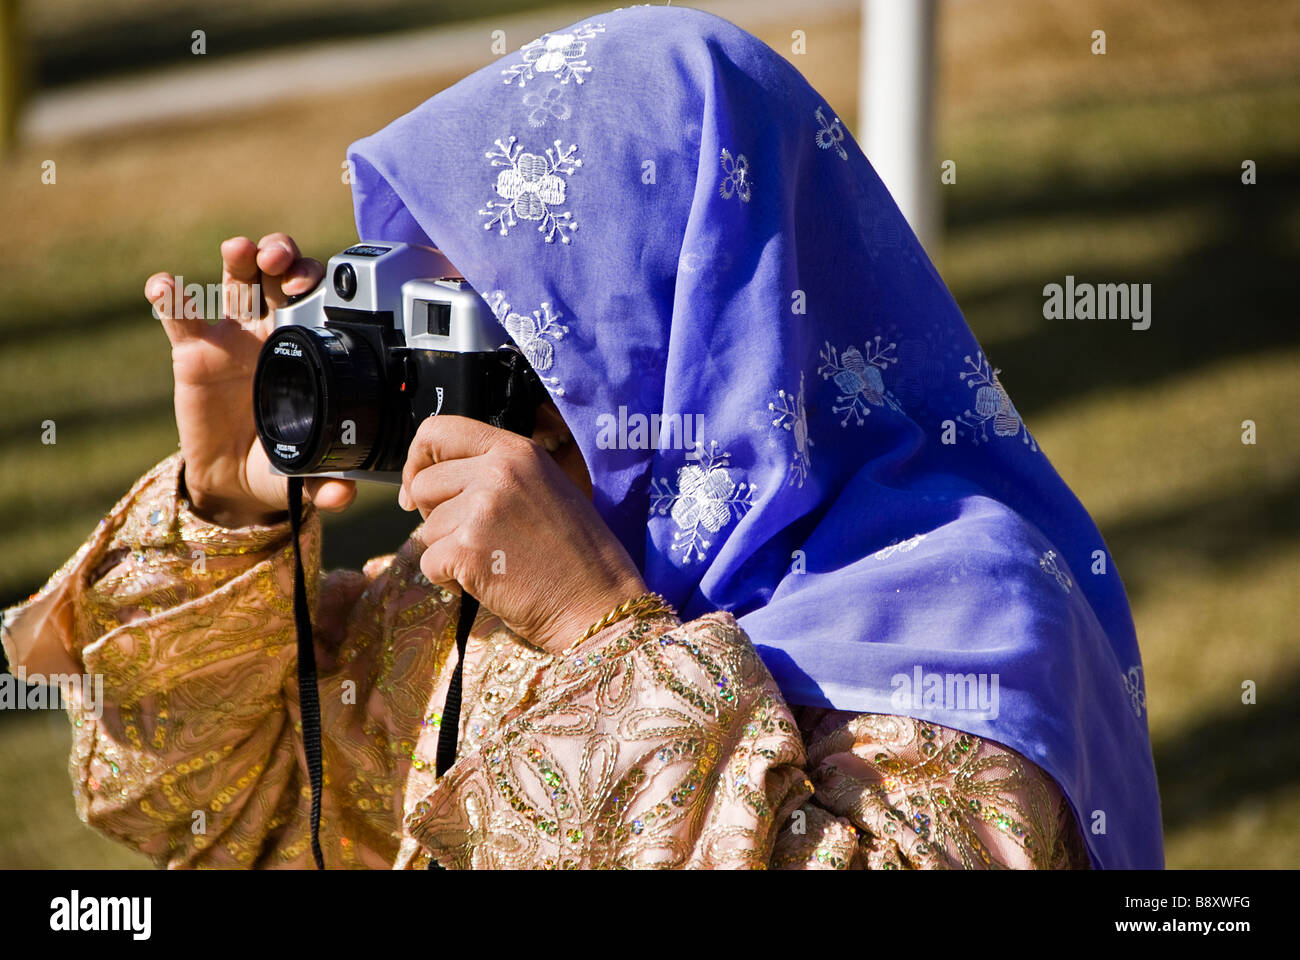 Donna con abiti tradizionali di scattare una foto con una vecchia macchina fotografica, Sanliurfa, Turchia, Asia Foto Stock